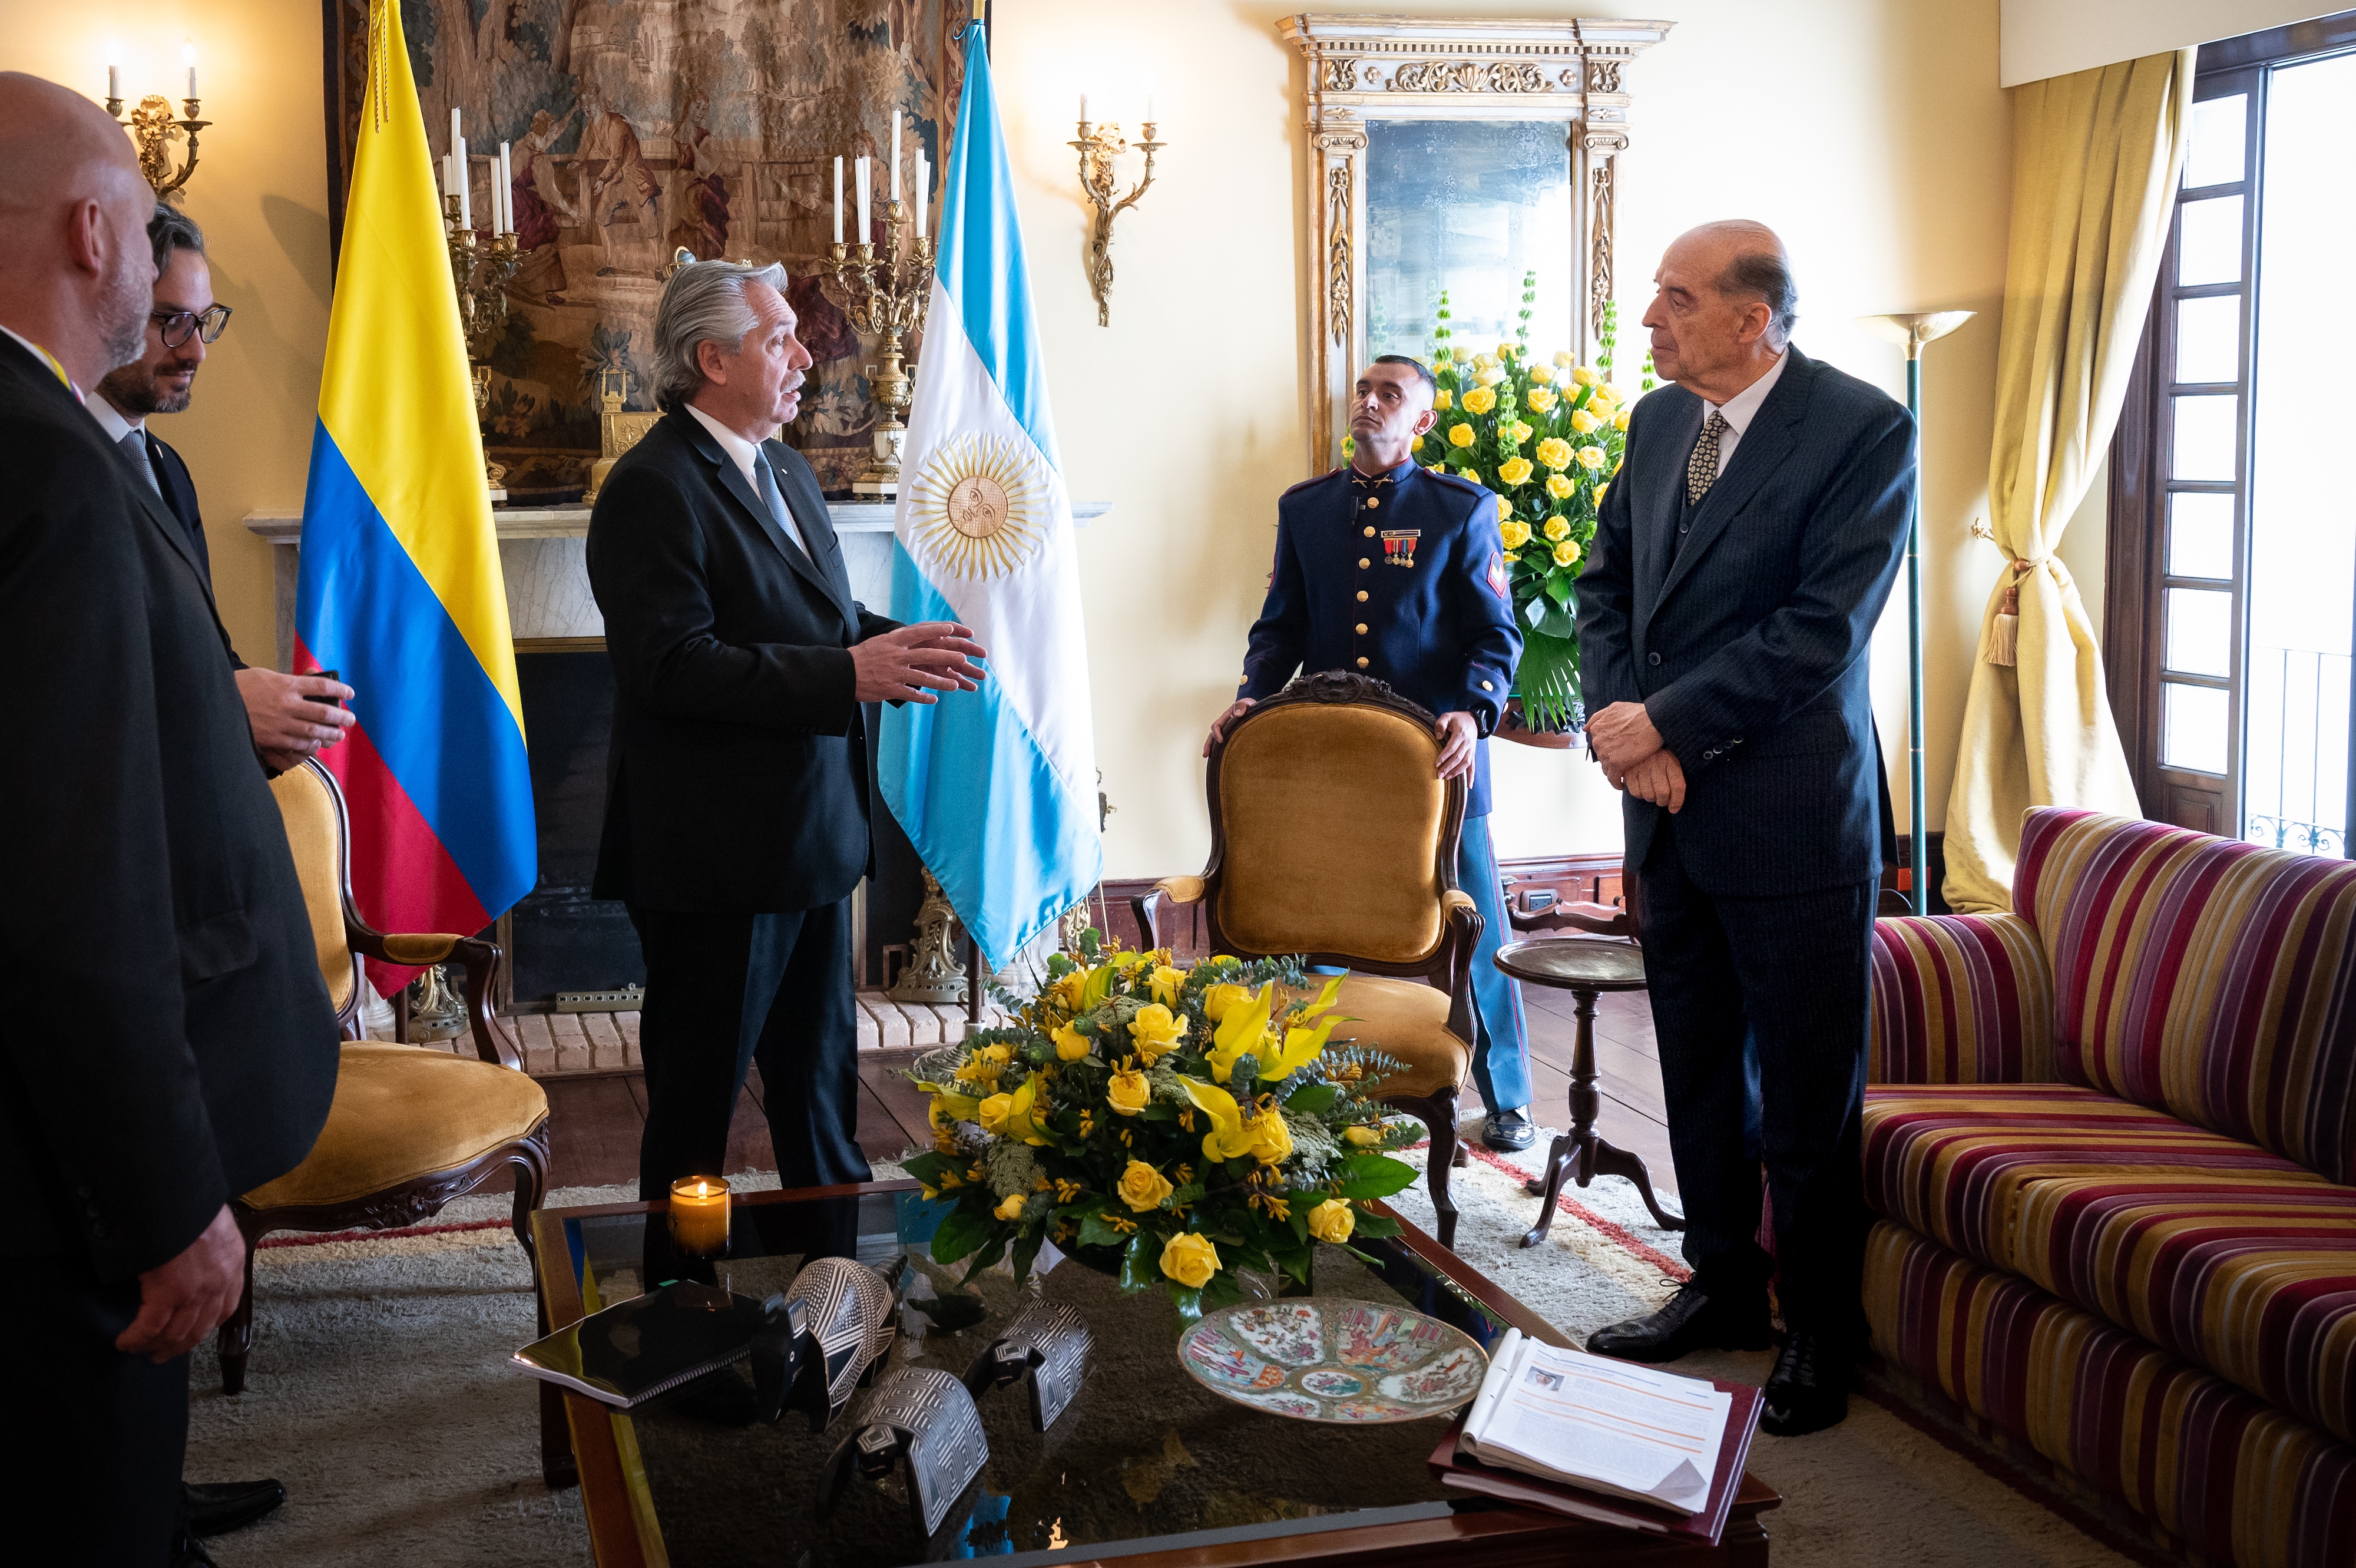 Con el mensaje de fortalecer la integración latinoamericana se realizó el encuentro entre los presidente de Colombia y Argentina